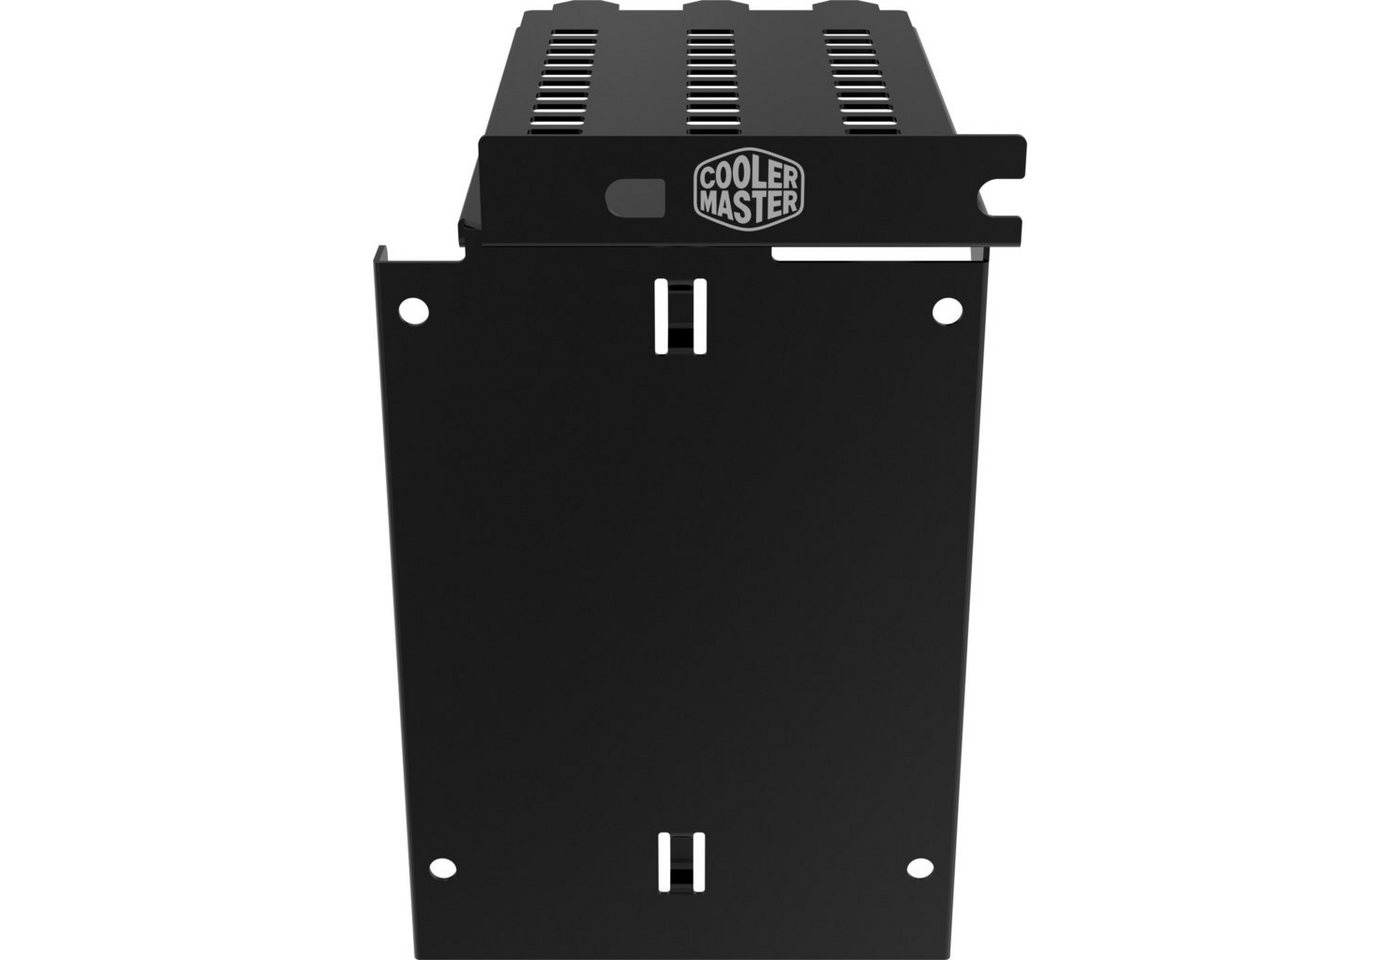 COOLER MASTER Festplatten-Einbaurahmen SSD Display Bracket (1 bay) von COOLER MASTER